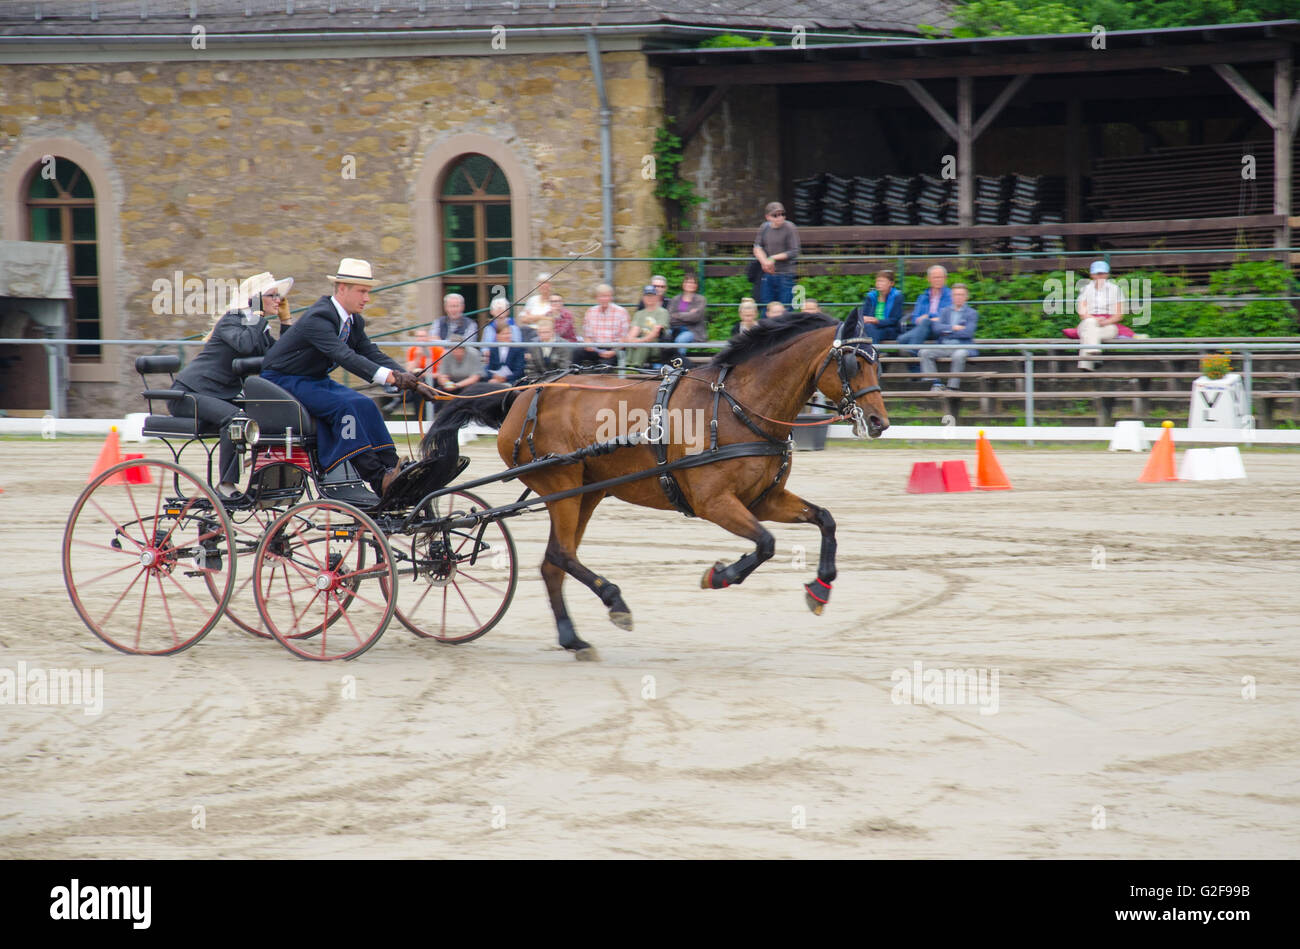 Hindernis-Parcours Rennen der internationalen Pferd Kutsche Trainer Rennsport in Dillenburg, Deutschland Stockfoto